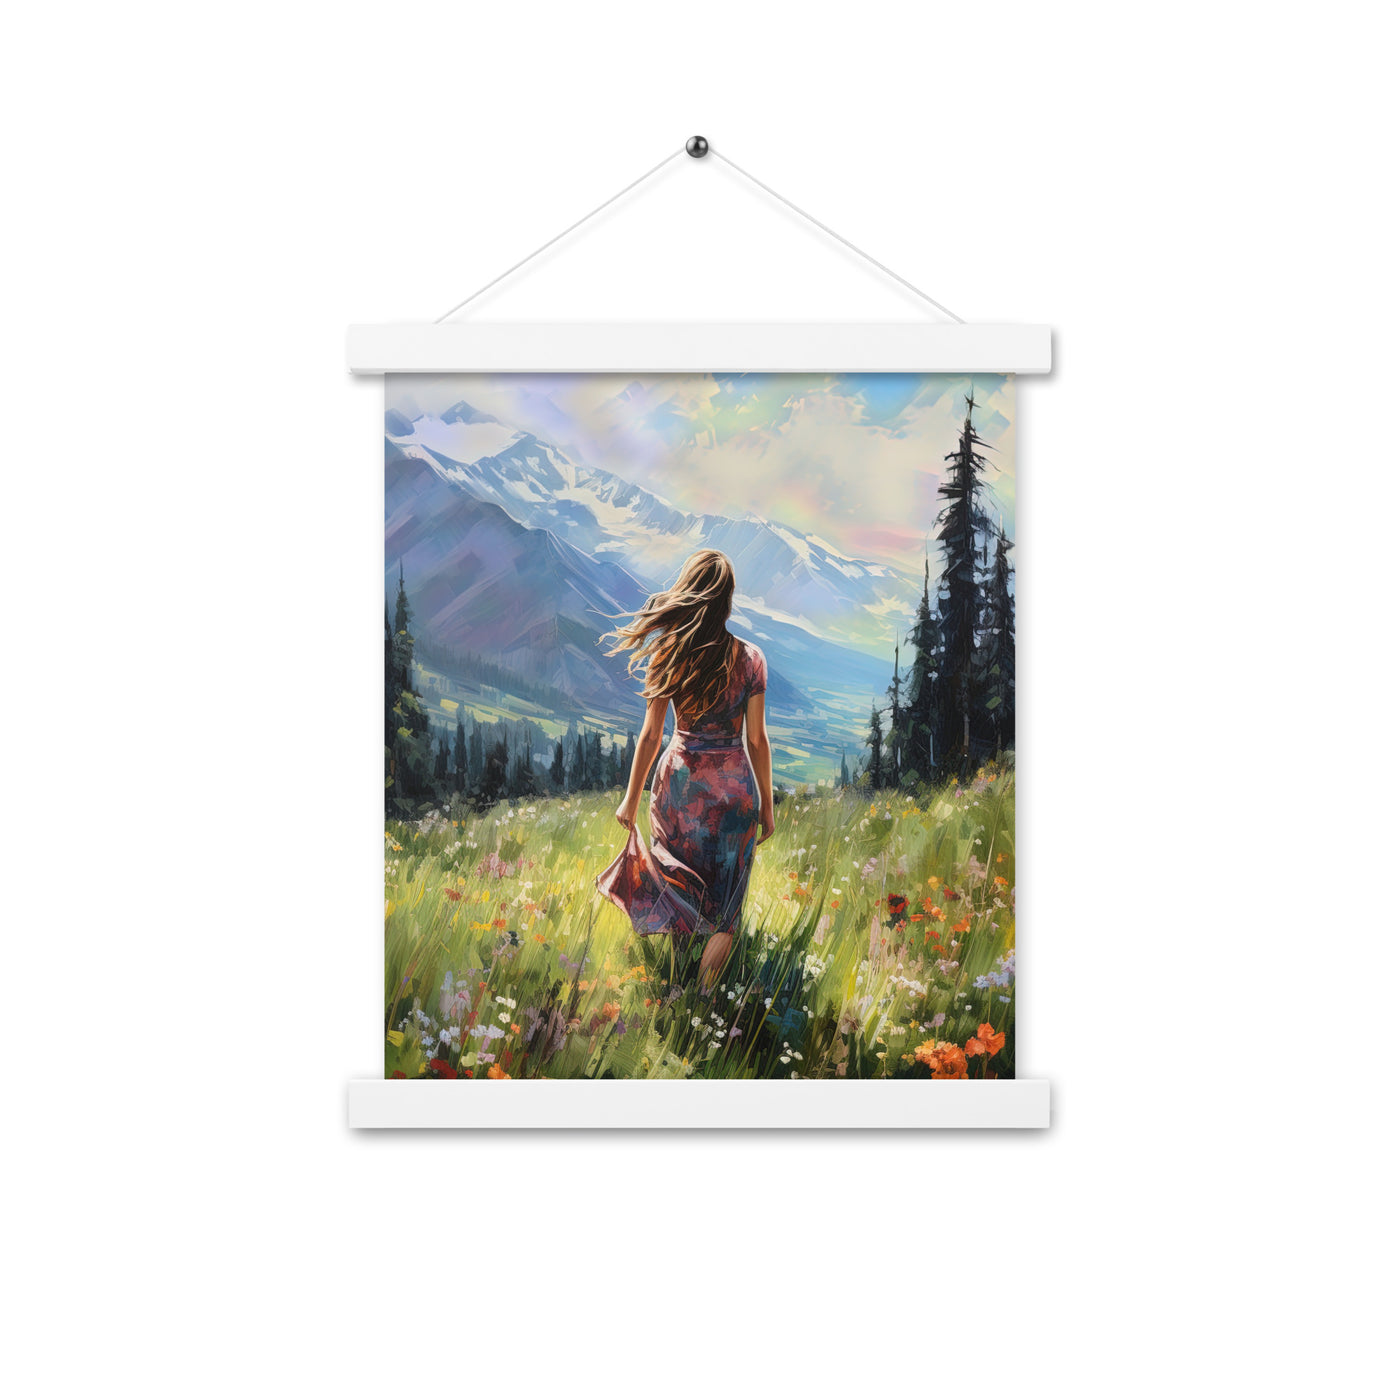 Frau mit langen Kleid im Feld mit Blumen - Berge im Hintergrund - Malerei - Premium Poster mit Aufhängung berge xxx 27.9 x 35.6 cm